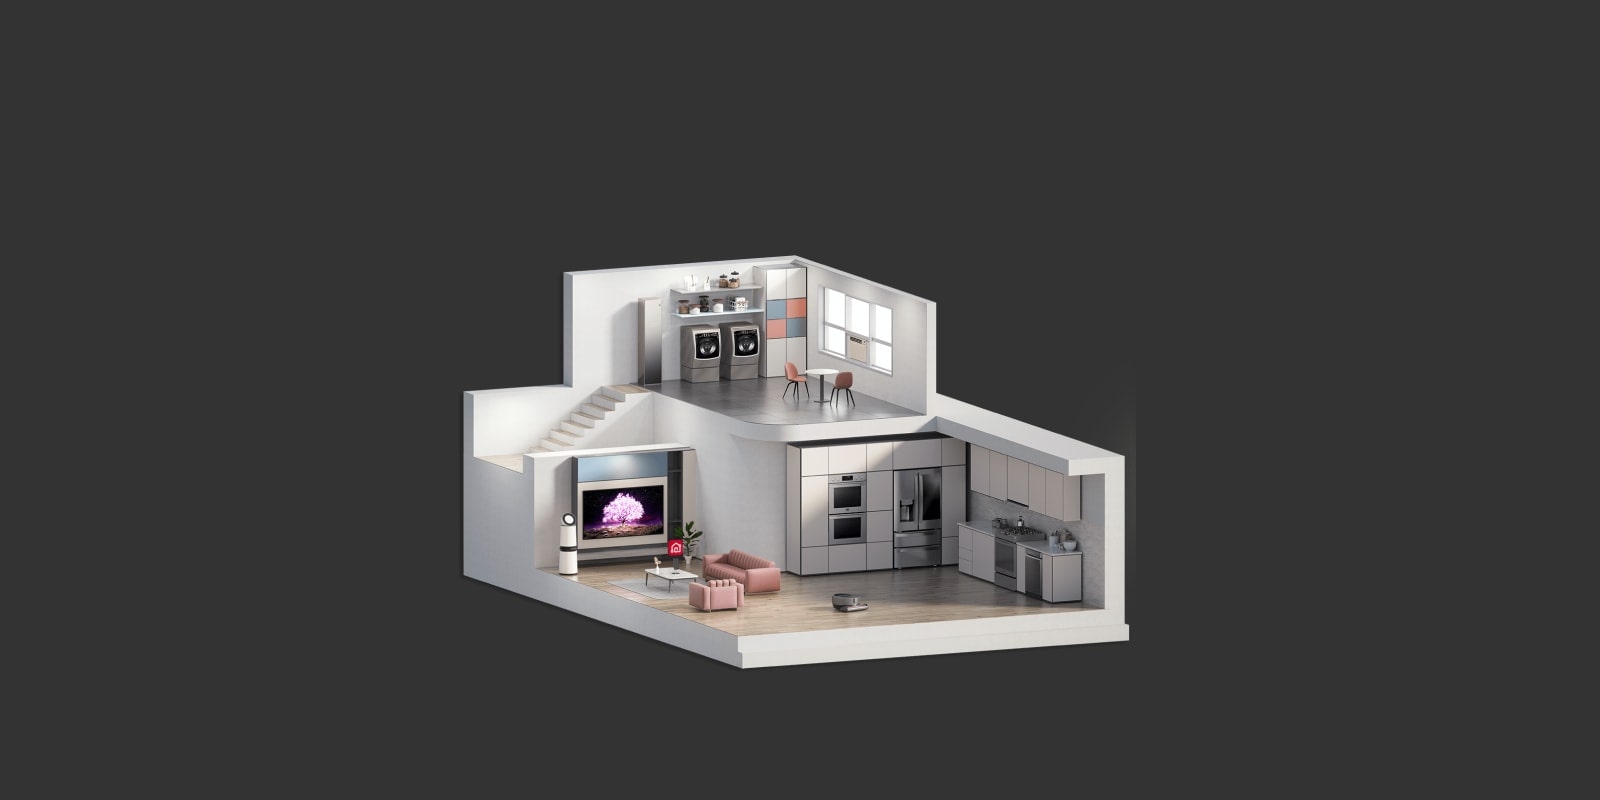 בתמונה מוצג חתך רוחב של דגם של בית ובו מוצגים החדרים השונים.